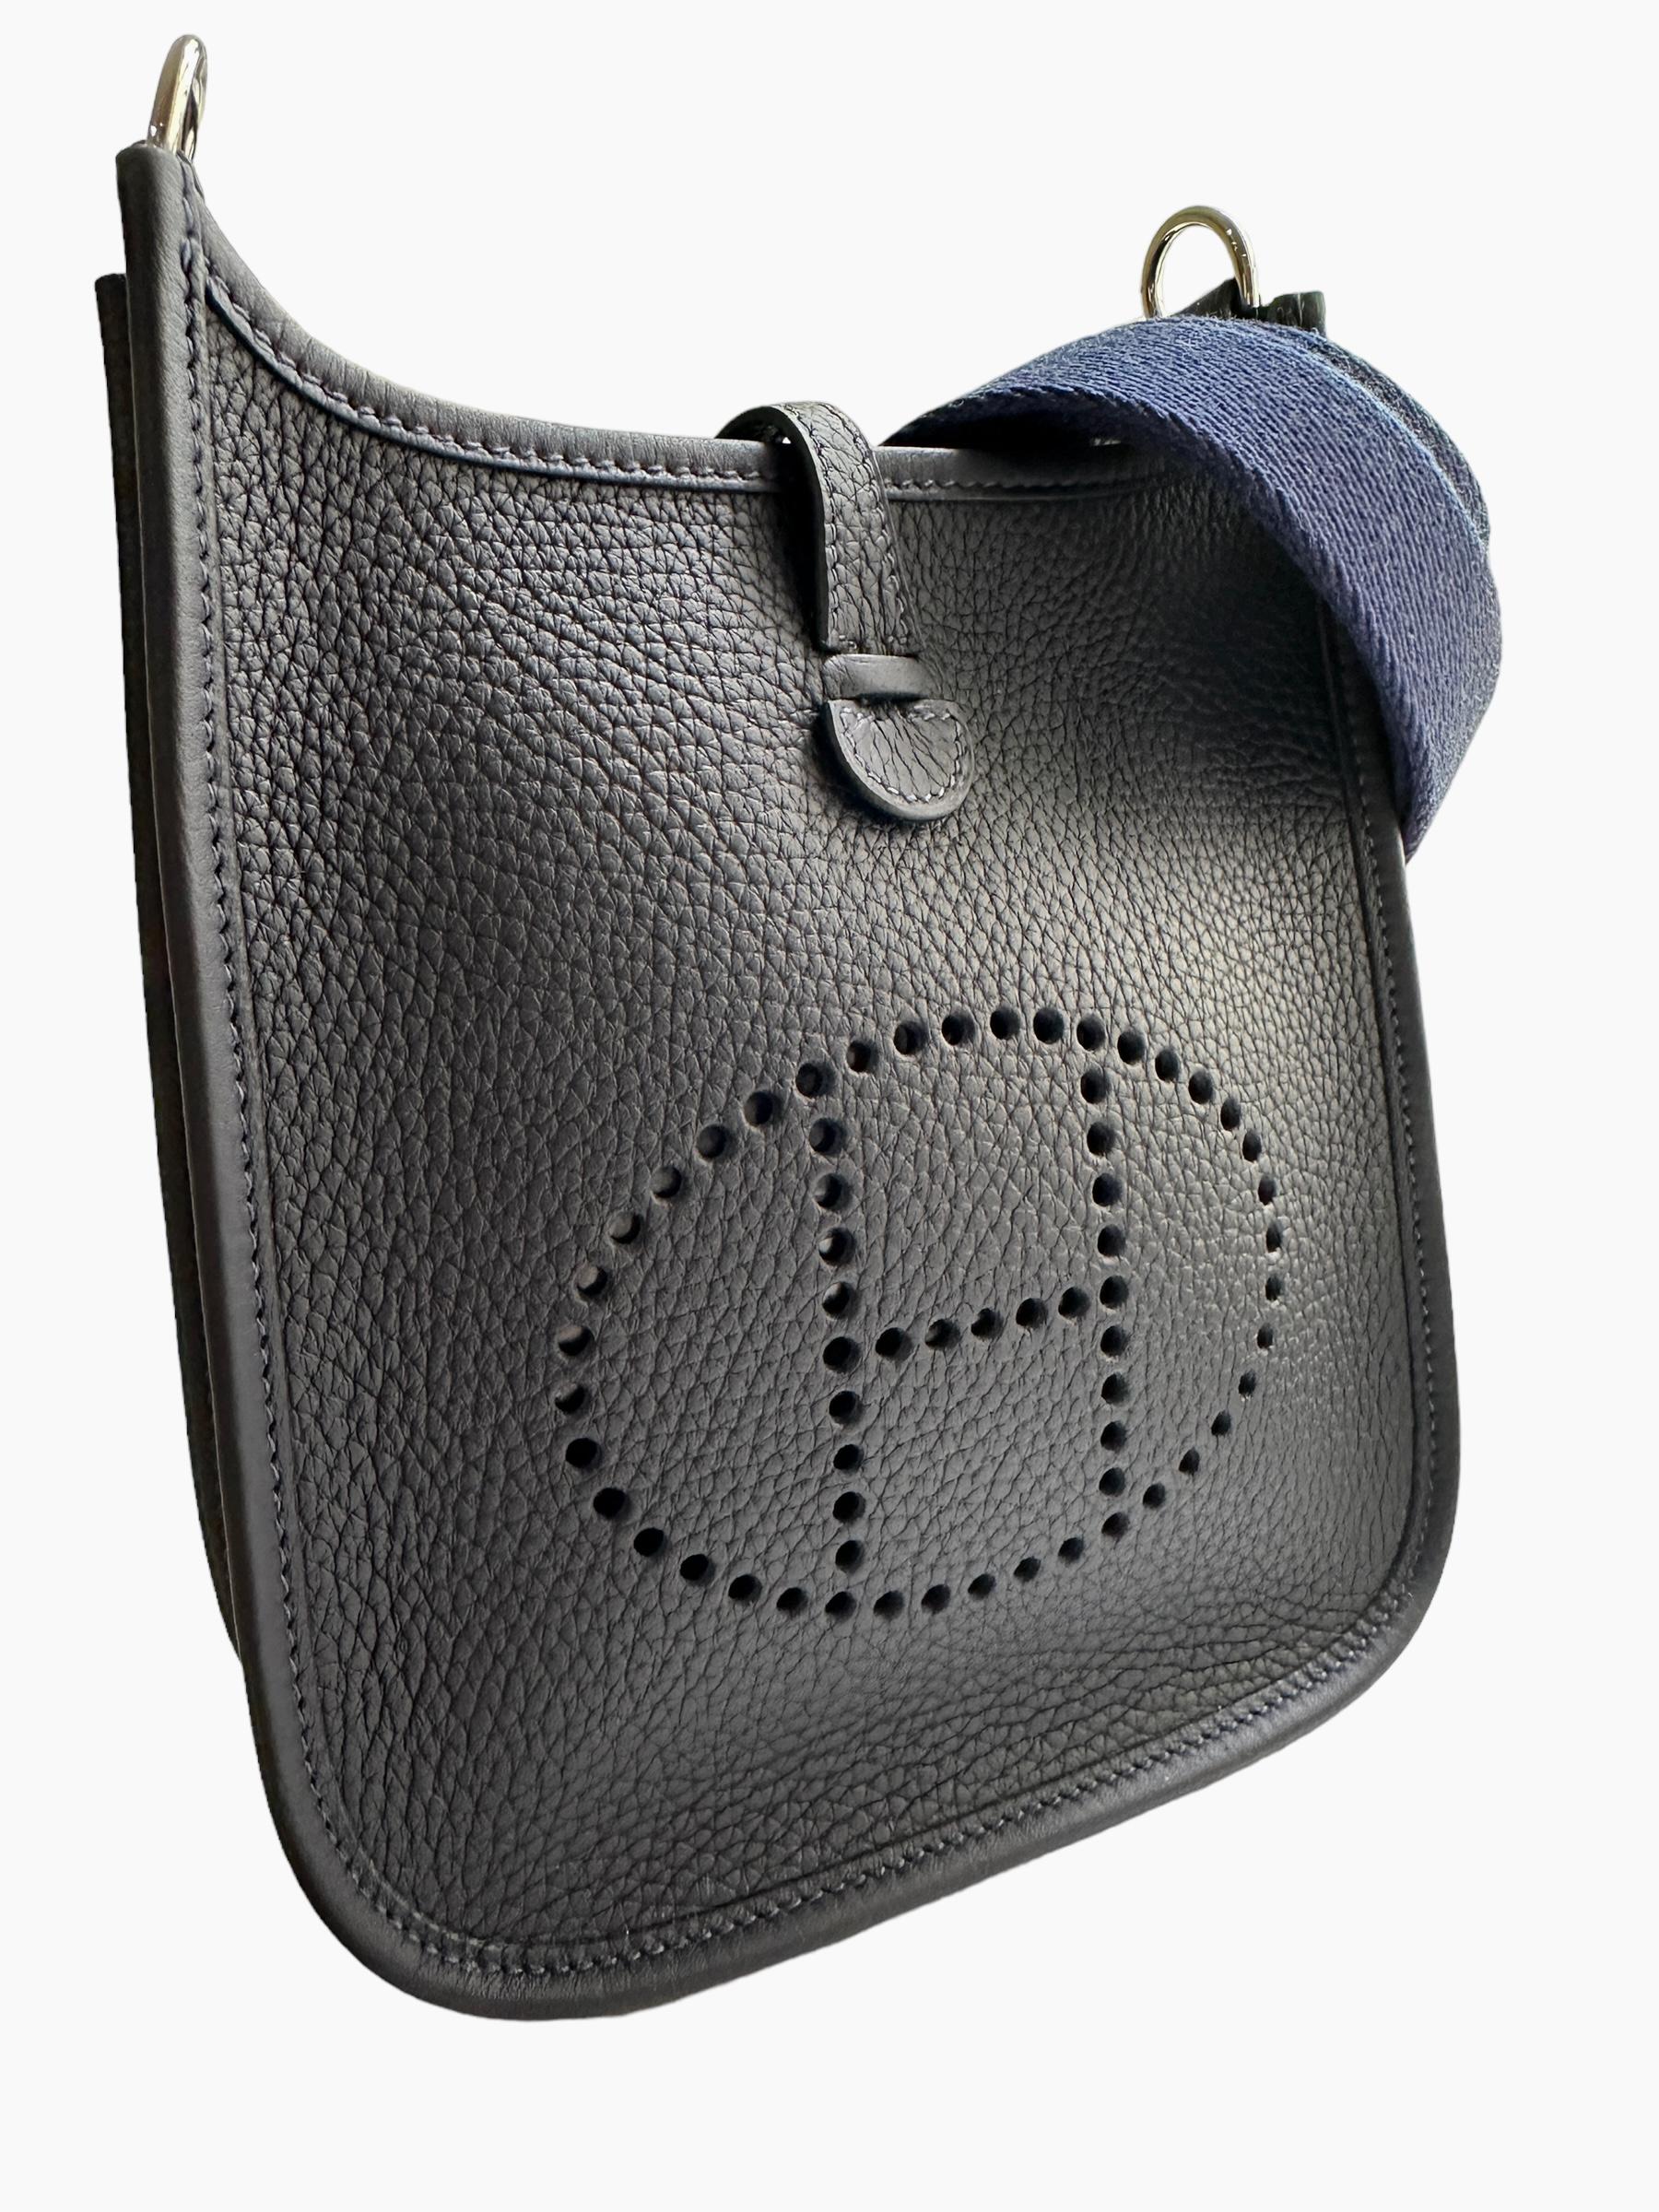 Women's or Men's Hermès Caban Evelyne 16 TPM Bag Handbag Blue Saphire Strap